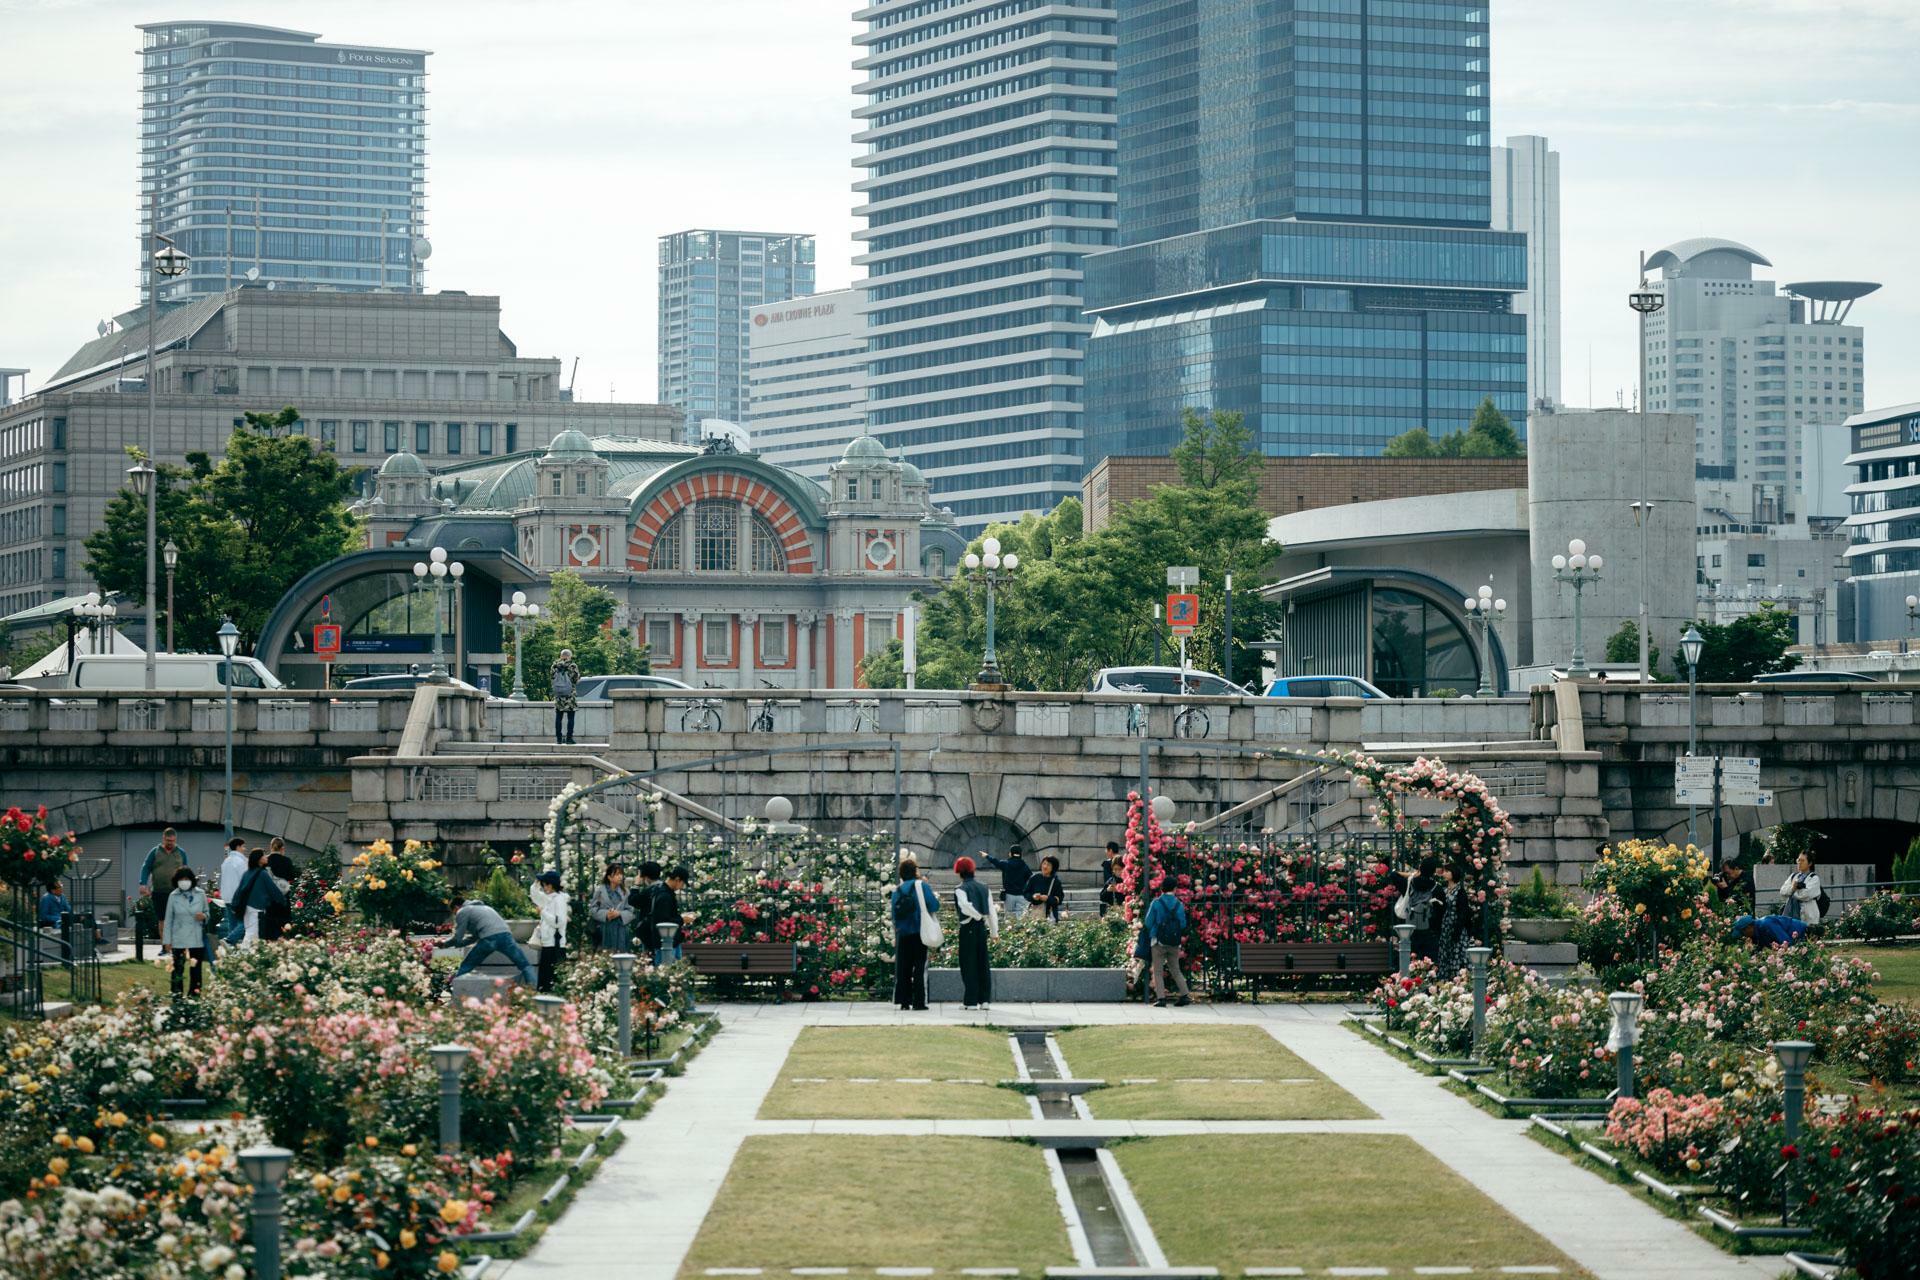 ビル群が経つ大阪の街中に緑豊かな公園が広がっています。